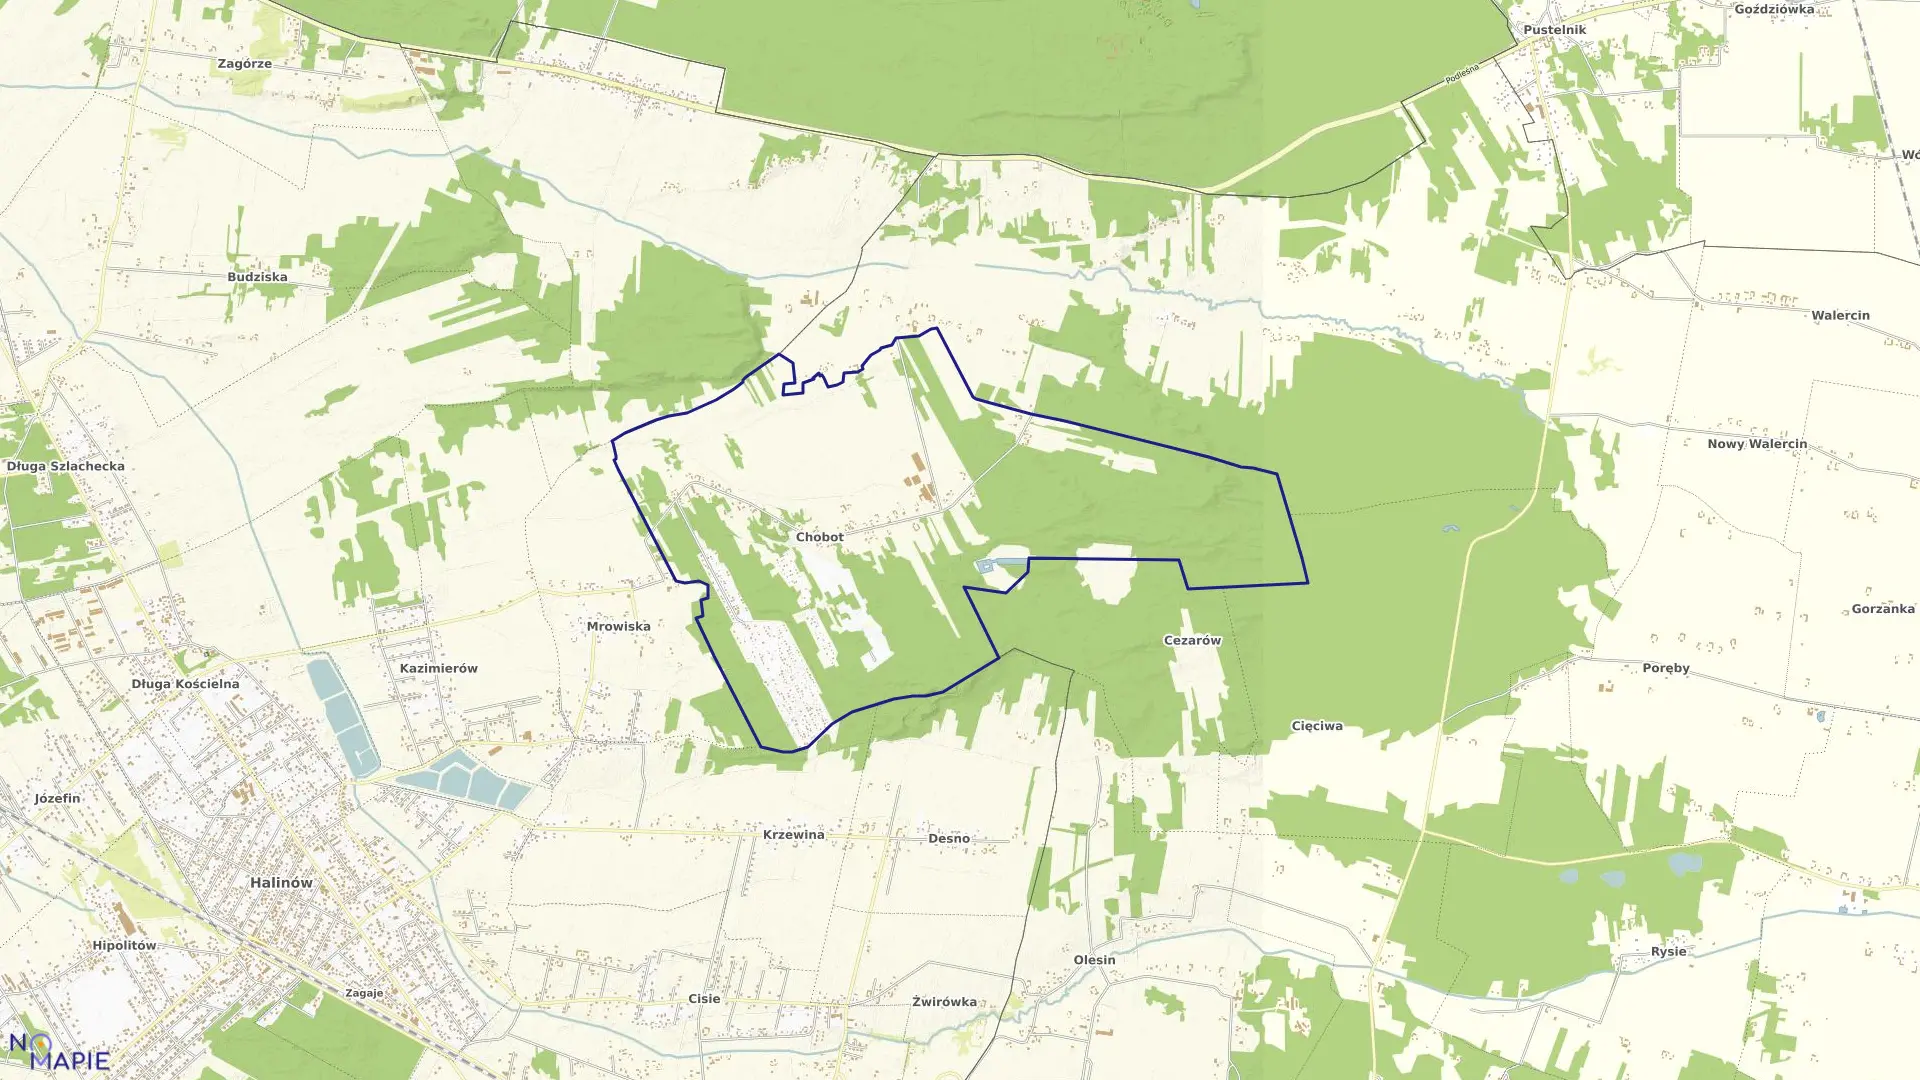 Mapa obrębu CHOBOT w gminie Halinów